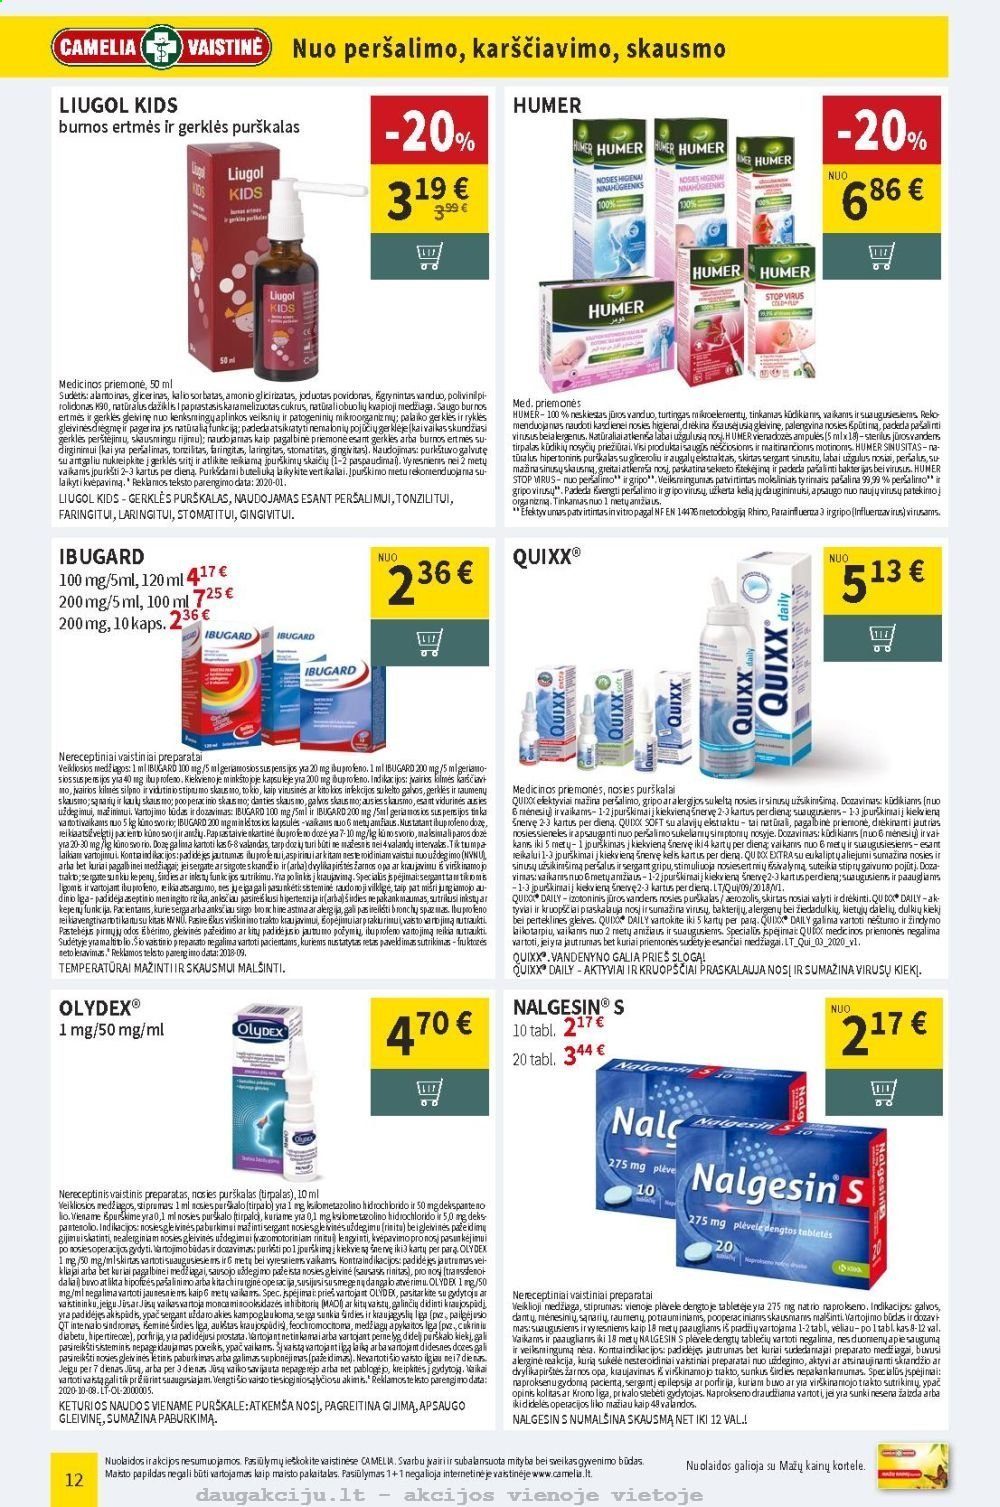 thumbnail - „CAMELIA Vaistinė“ leidinys - 2021 02 01 - 2021 02 28 - Išpardavimų produktai - Ibugard, Nalgesin. 12 puslapis.